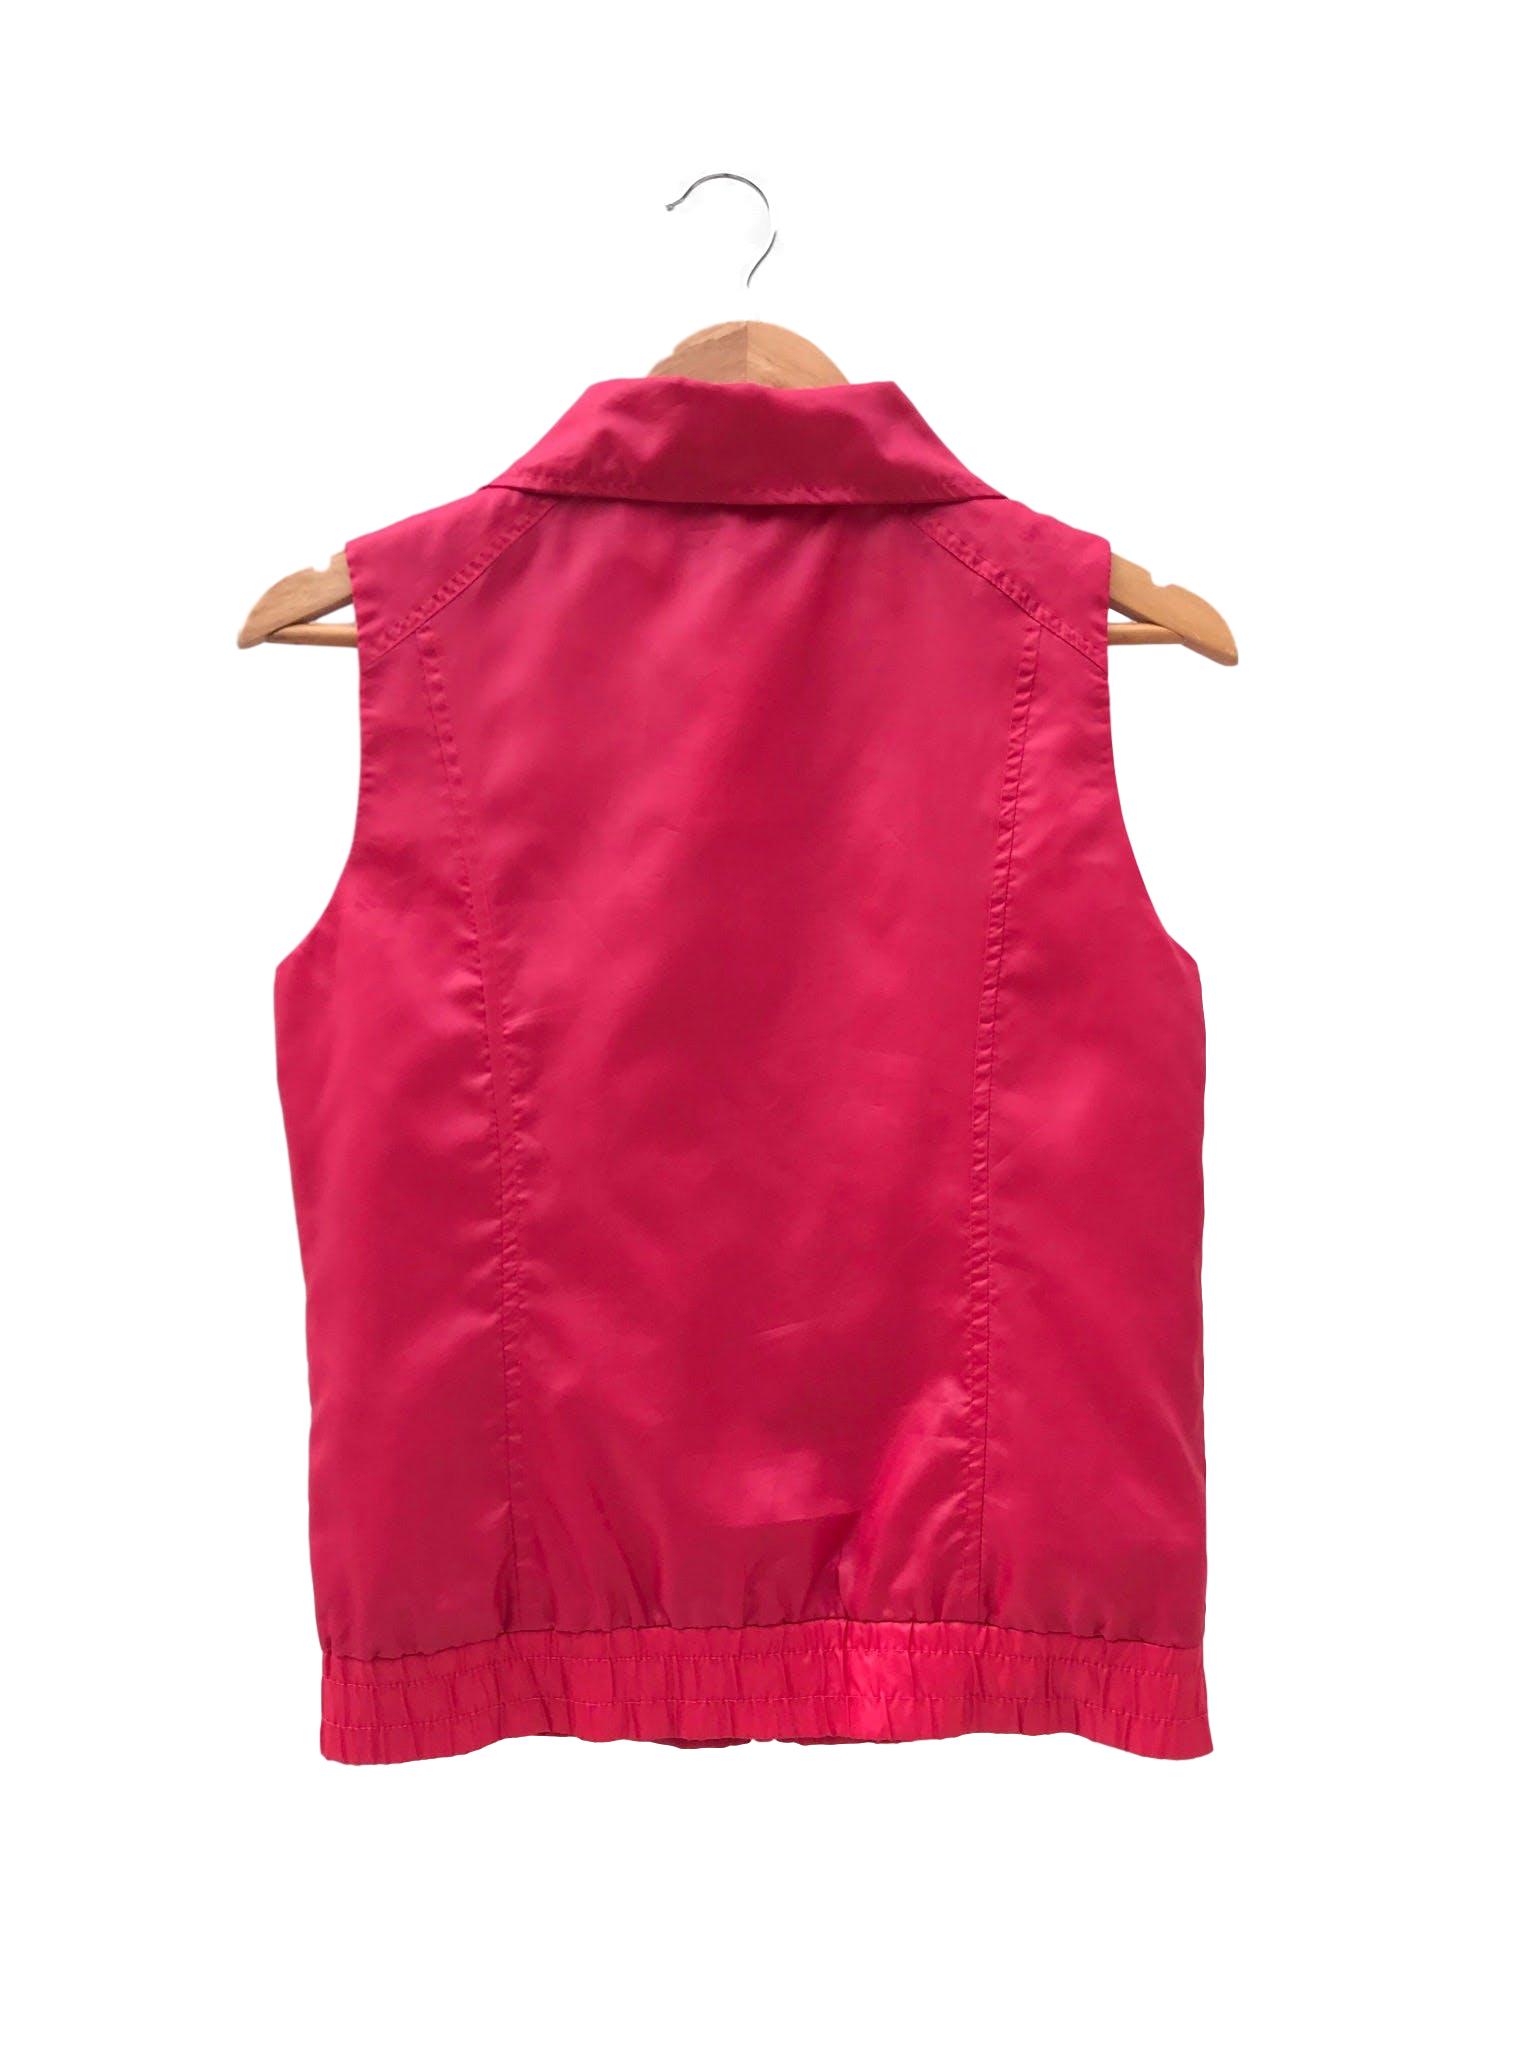 Chaleco rojo satinado, cierre en el medio, forrado y bolsillos laterales